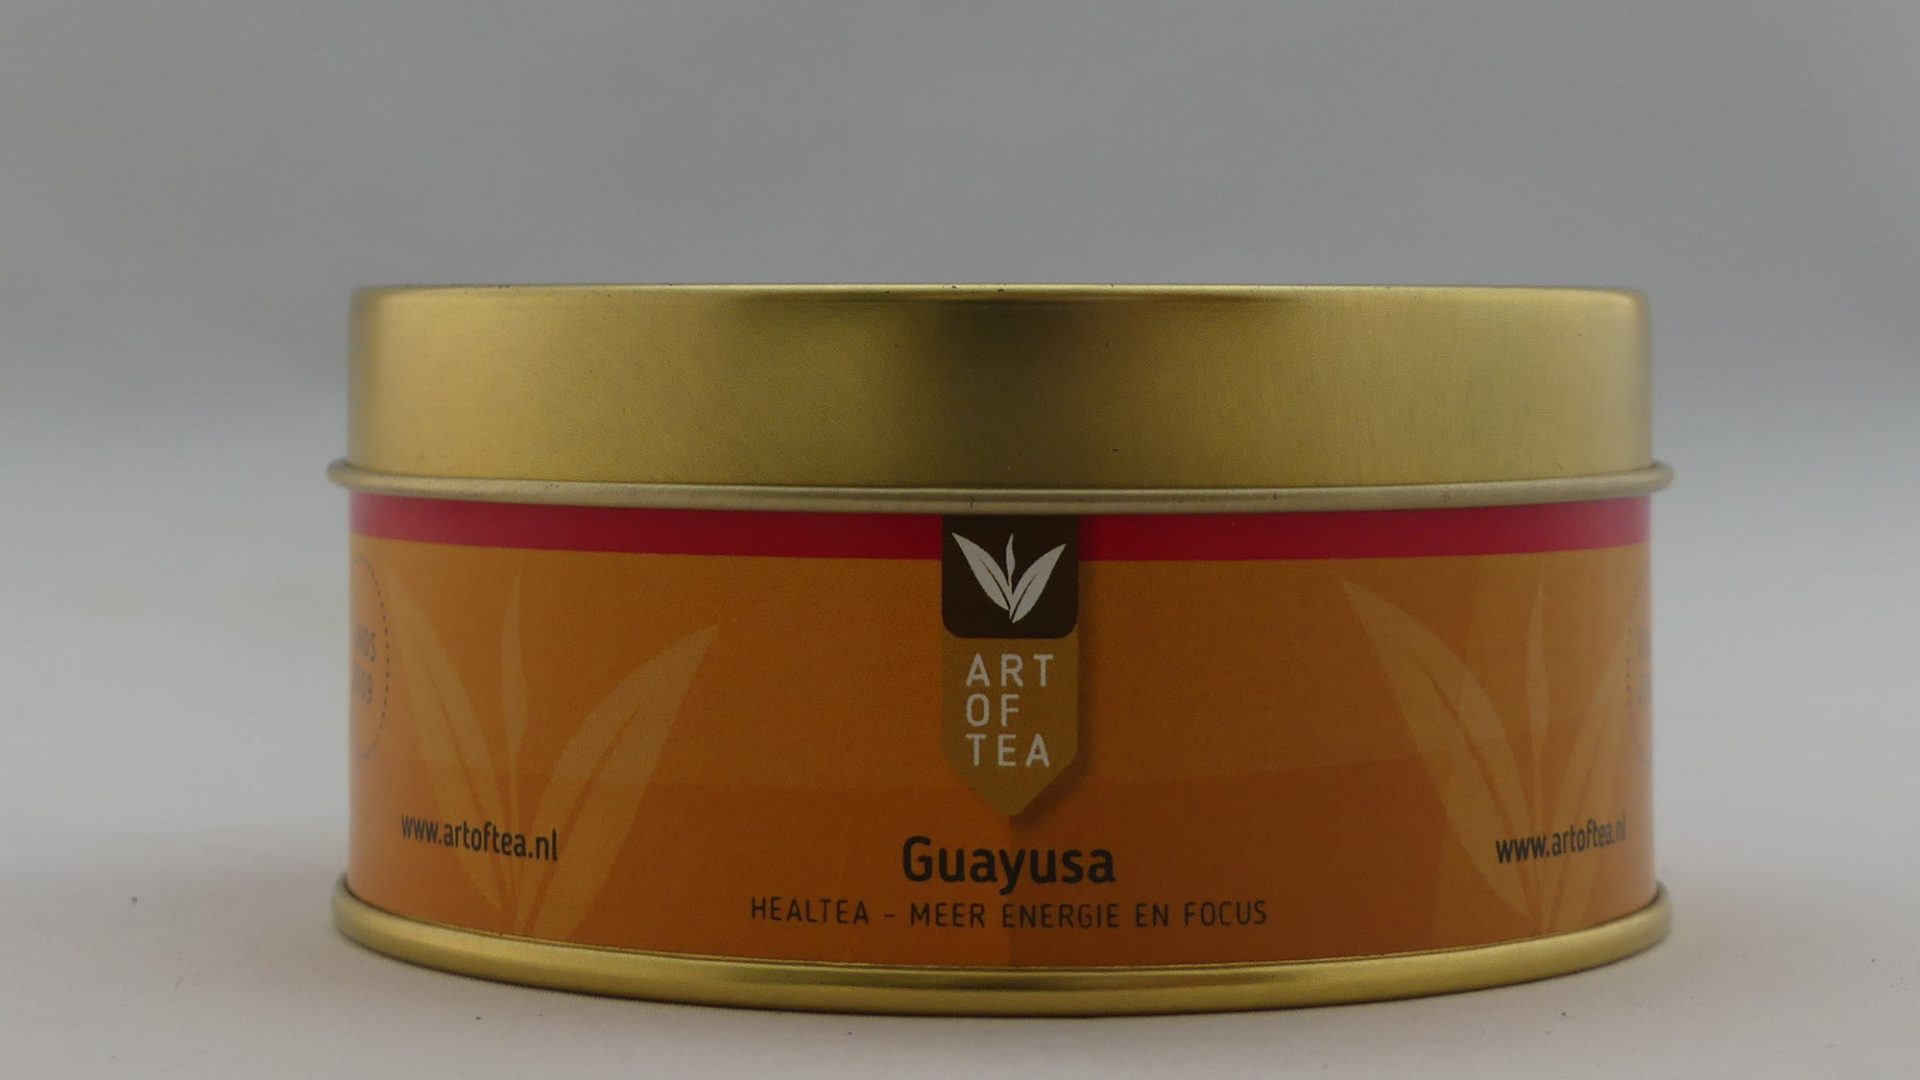 Guayusa